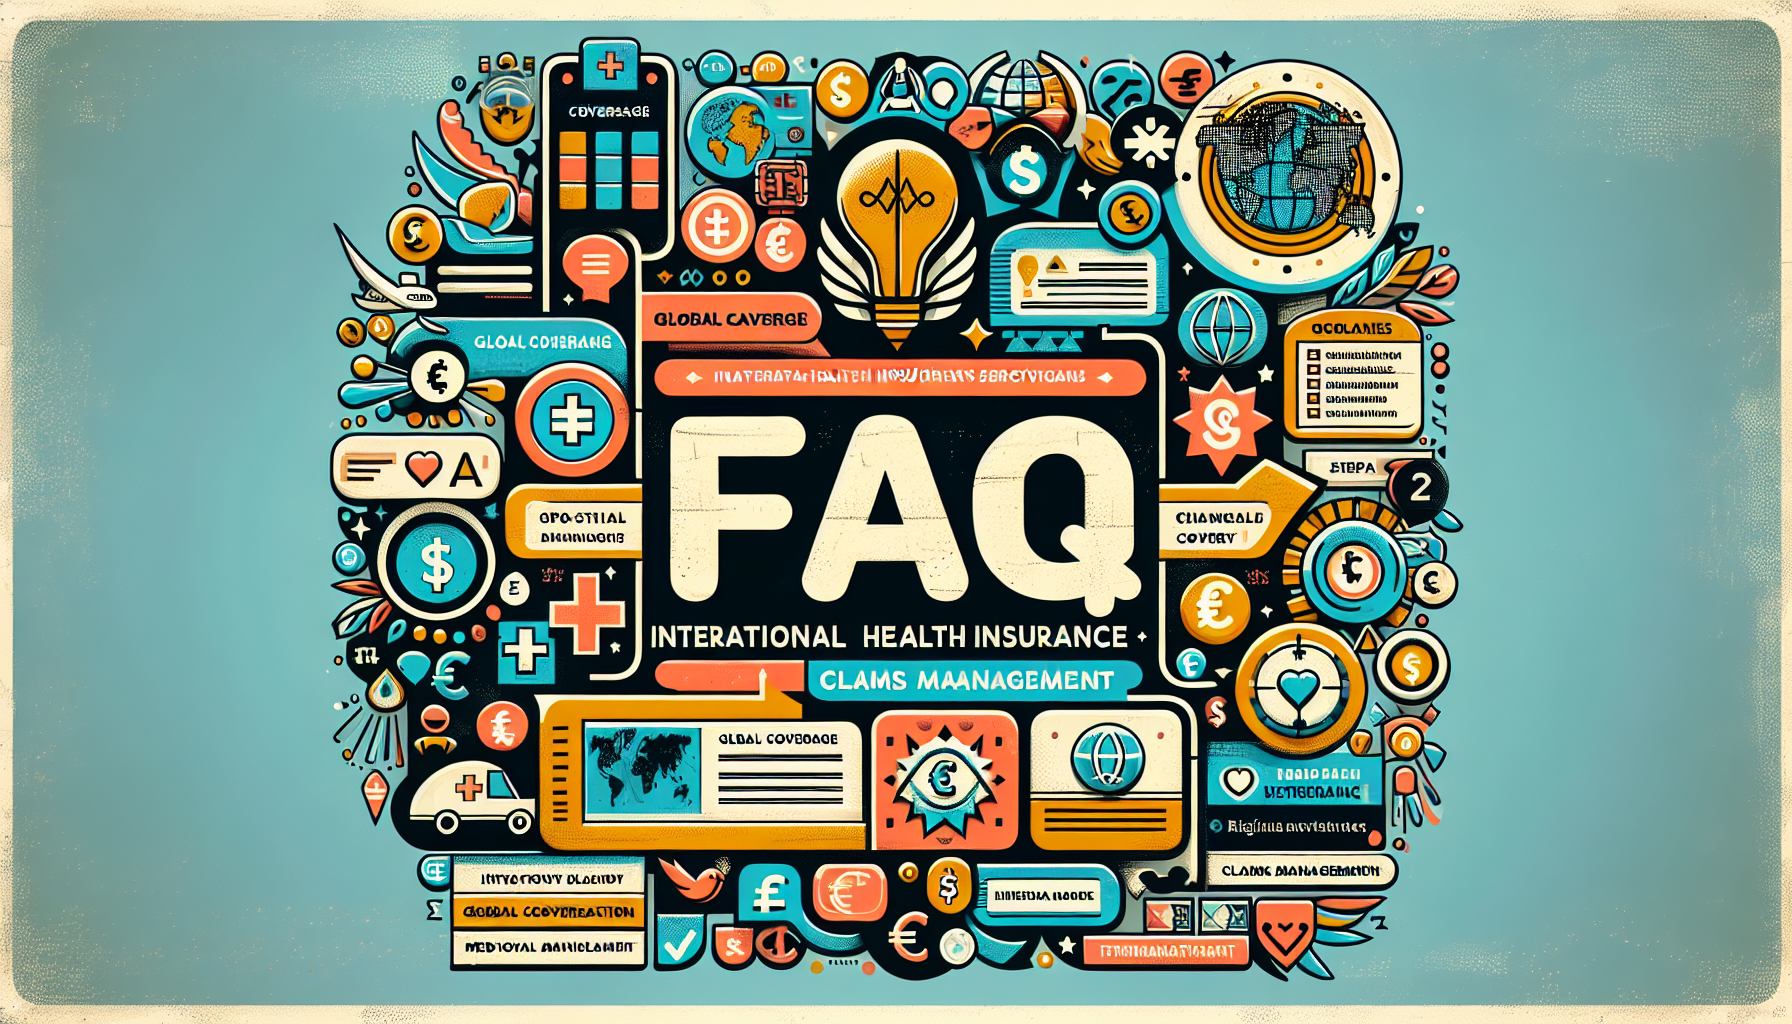 obtenez des réponses à vos questions sur la gestion des réclamations en matière d'assurance santé internationale dans cette faq détaillée.